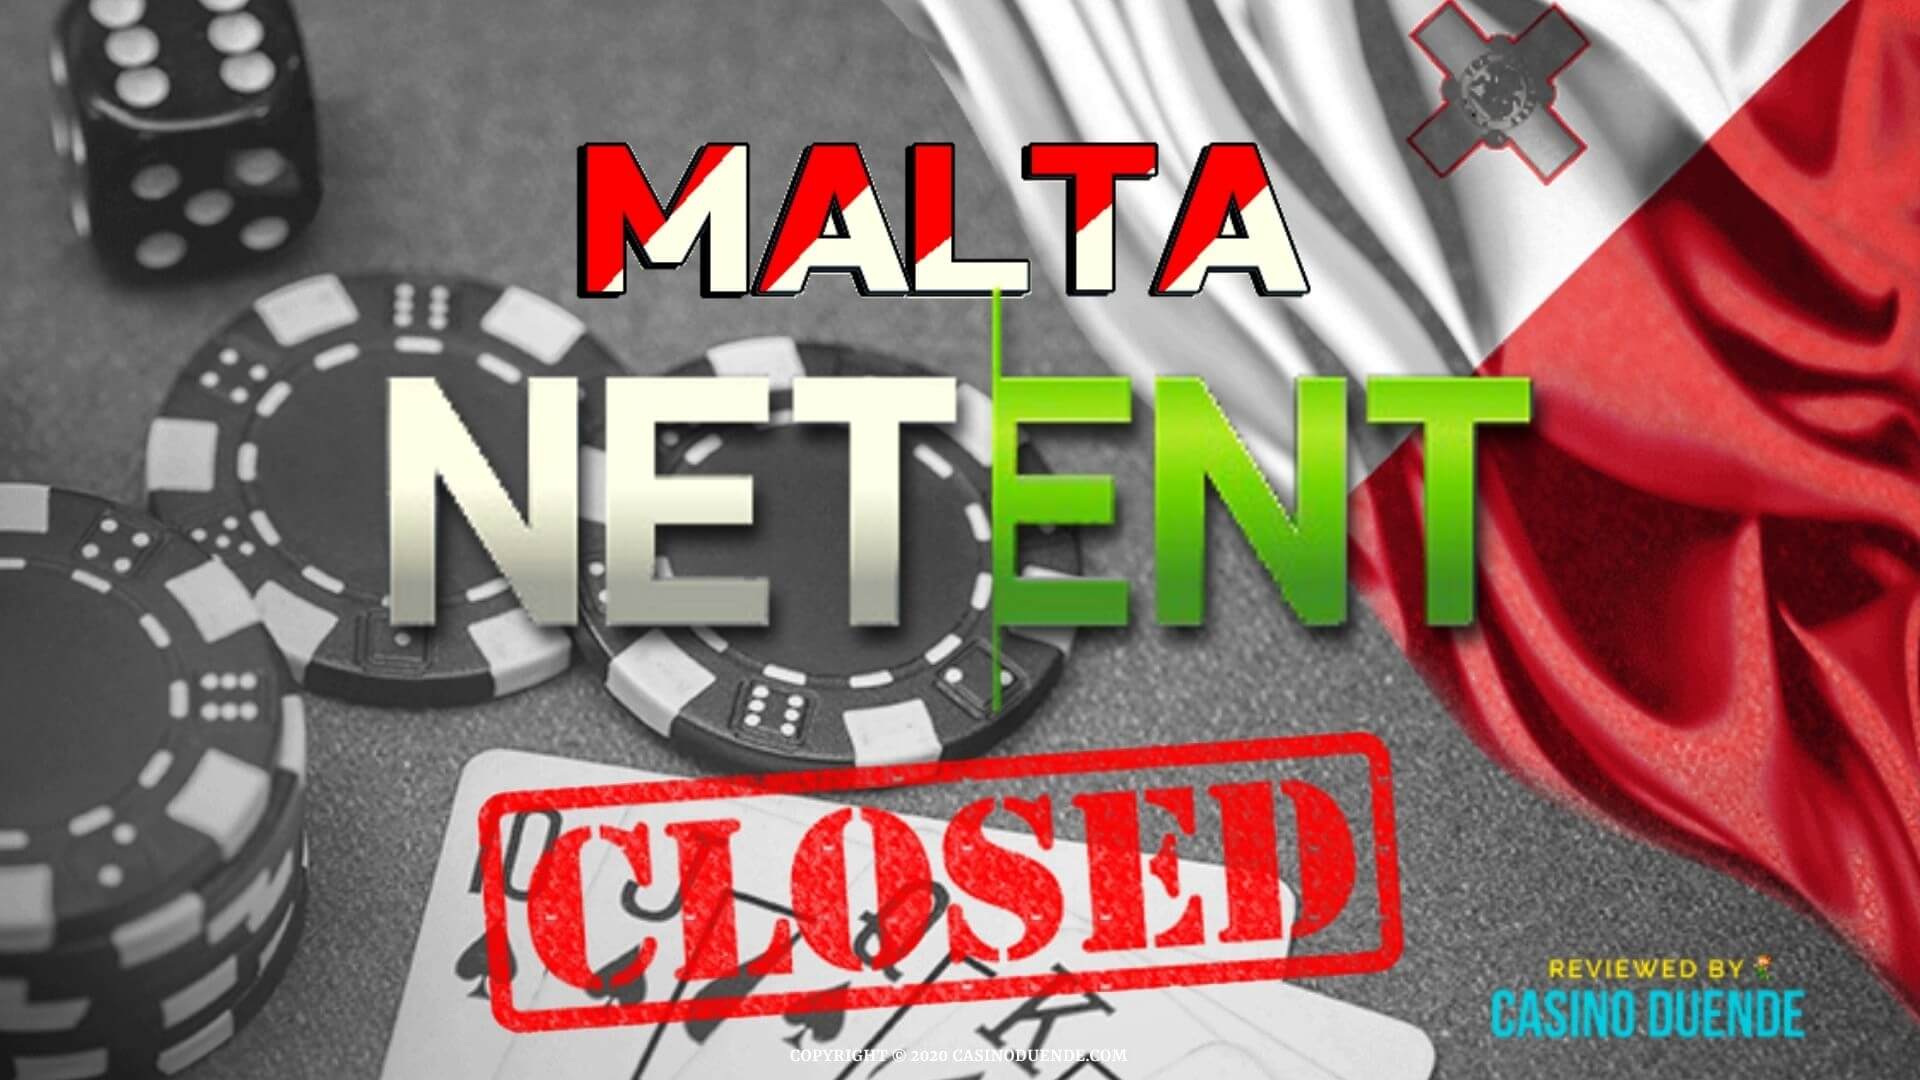 El despido masivo empleados de NetEnt en Malta